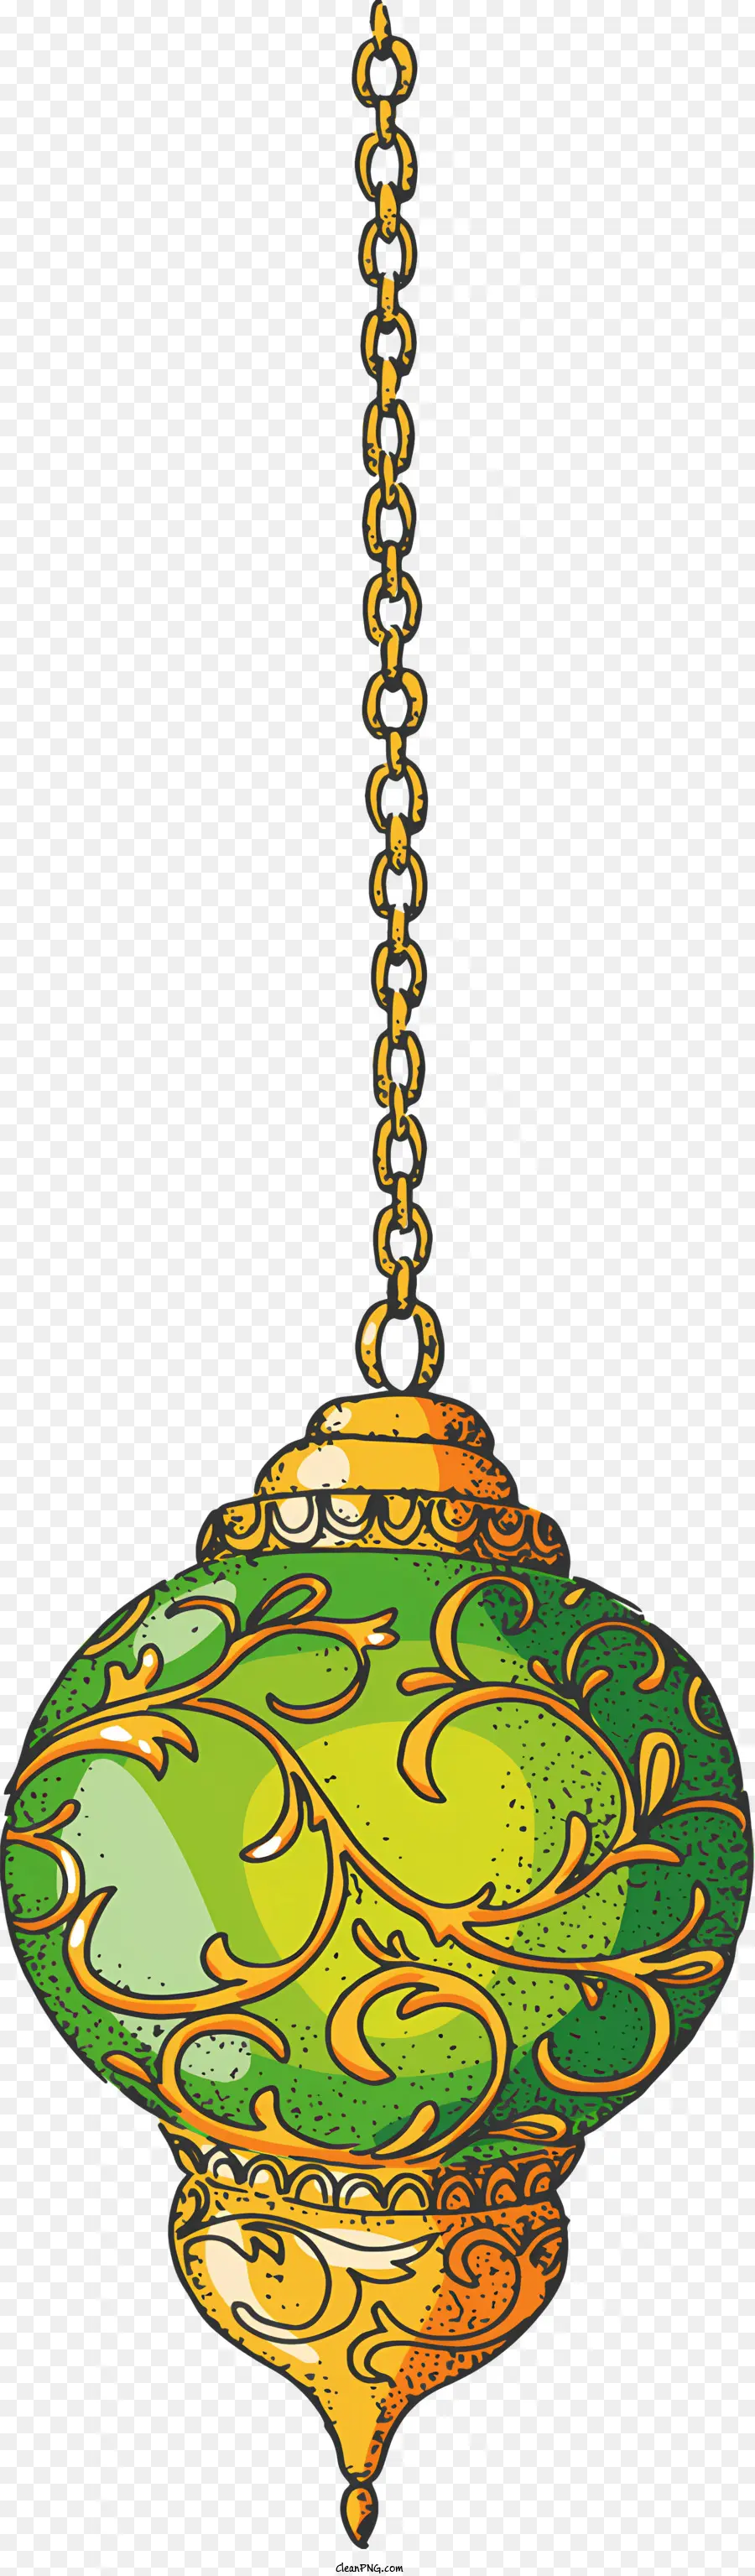 Ramadan - Elegante grüne und gelbe hängende Glaslampe